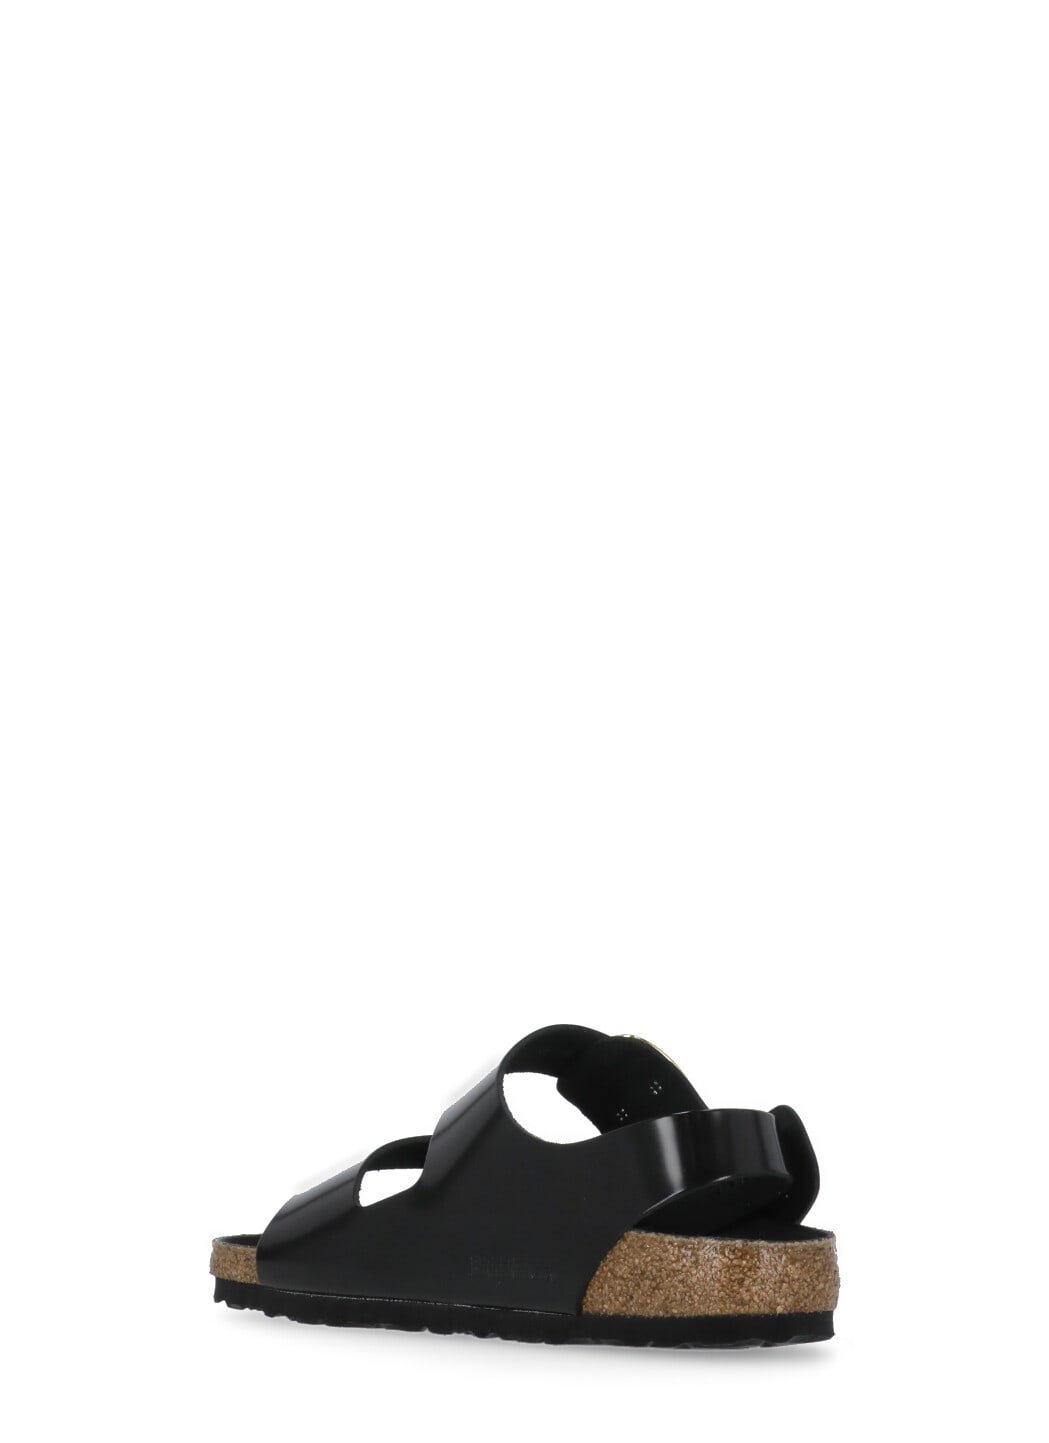 Shop Birkenstock Milano Big Buckle Sandals In Black